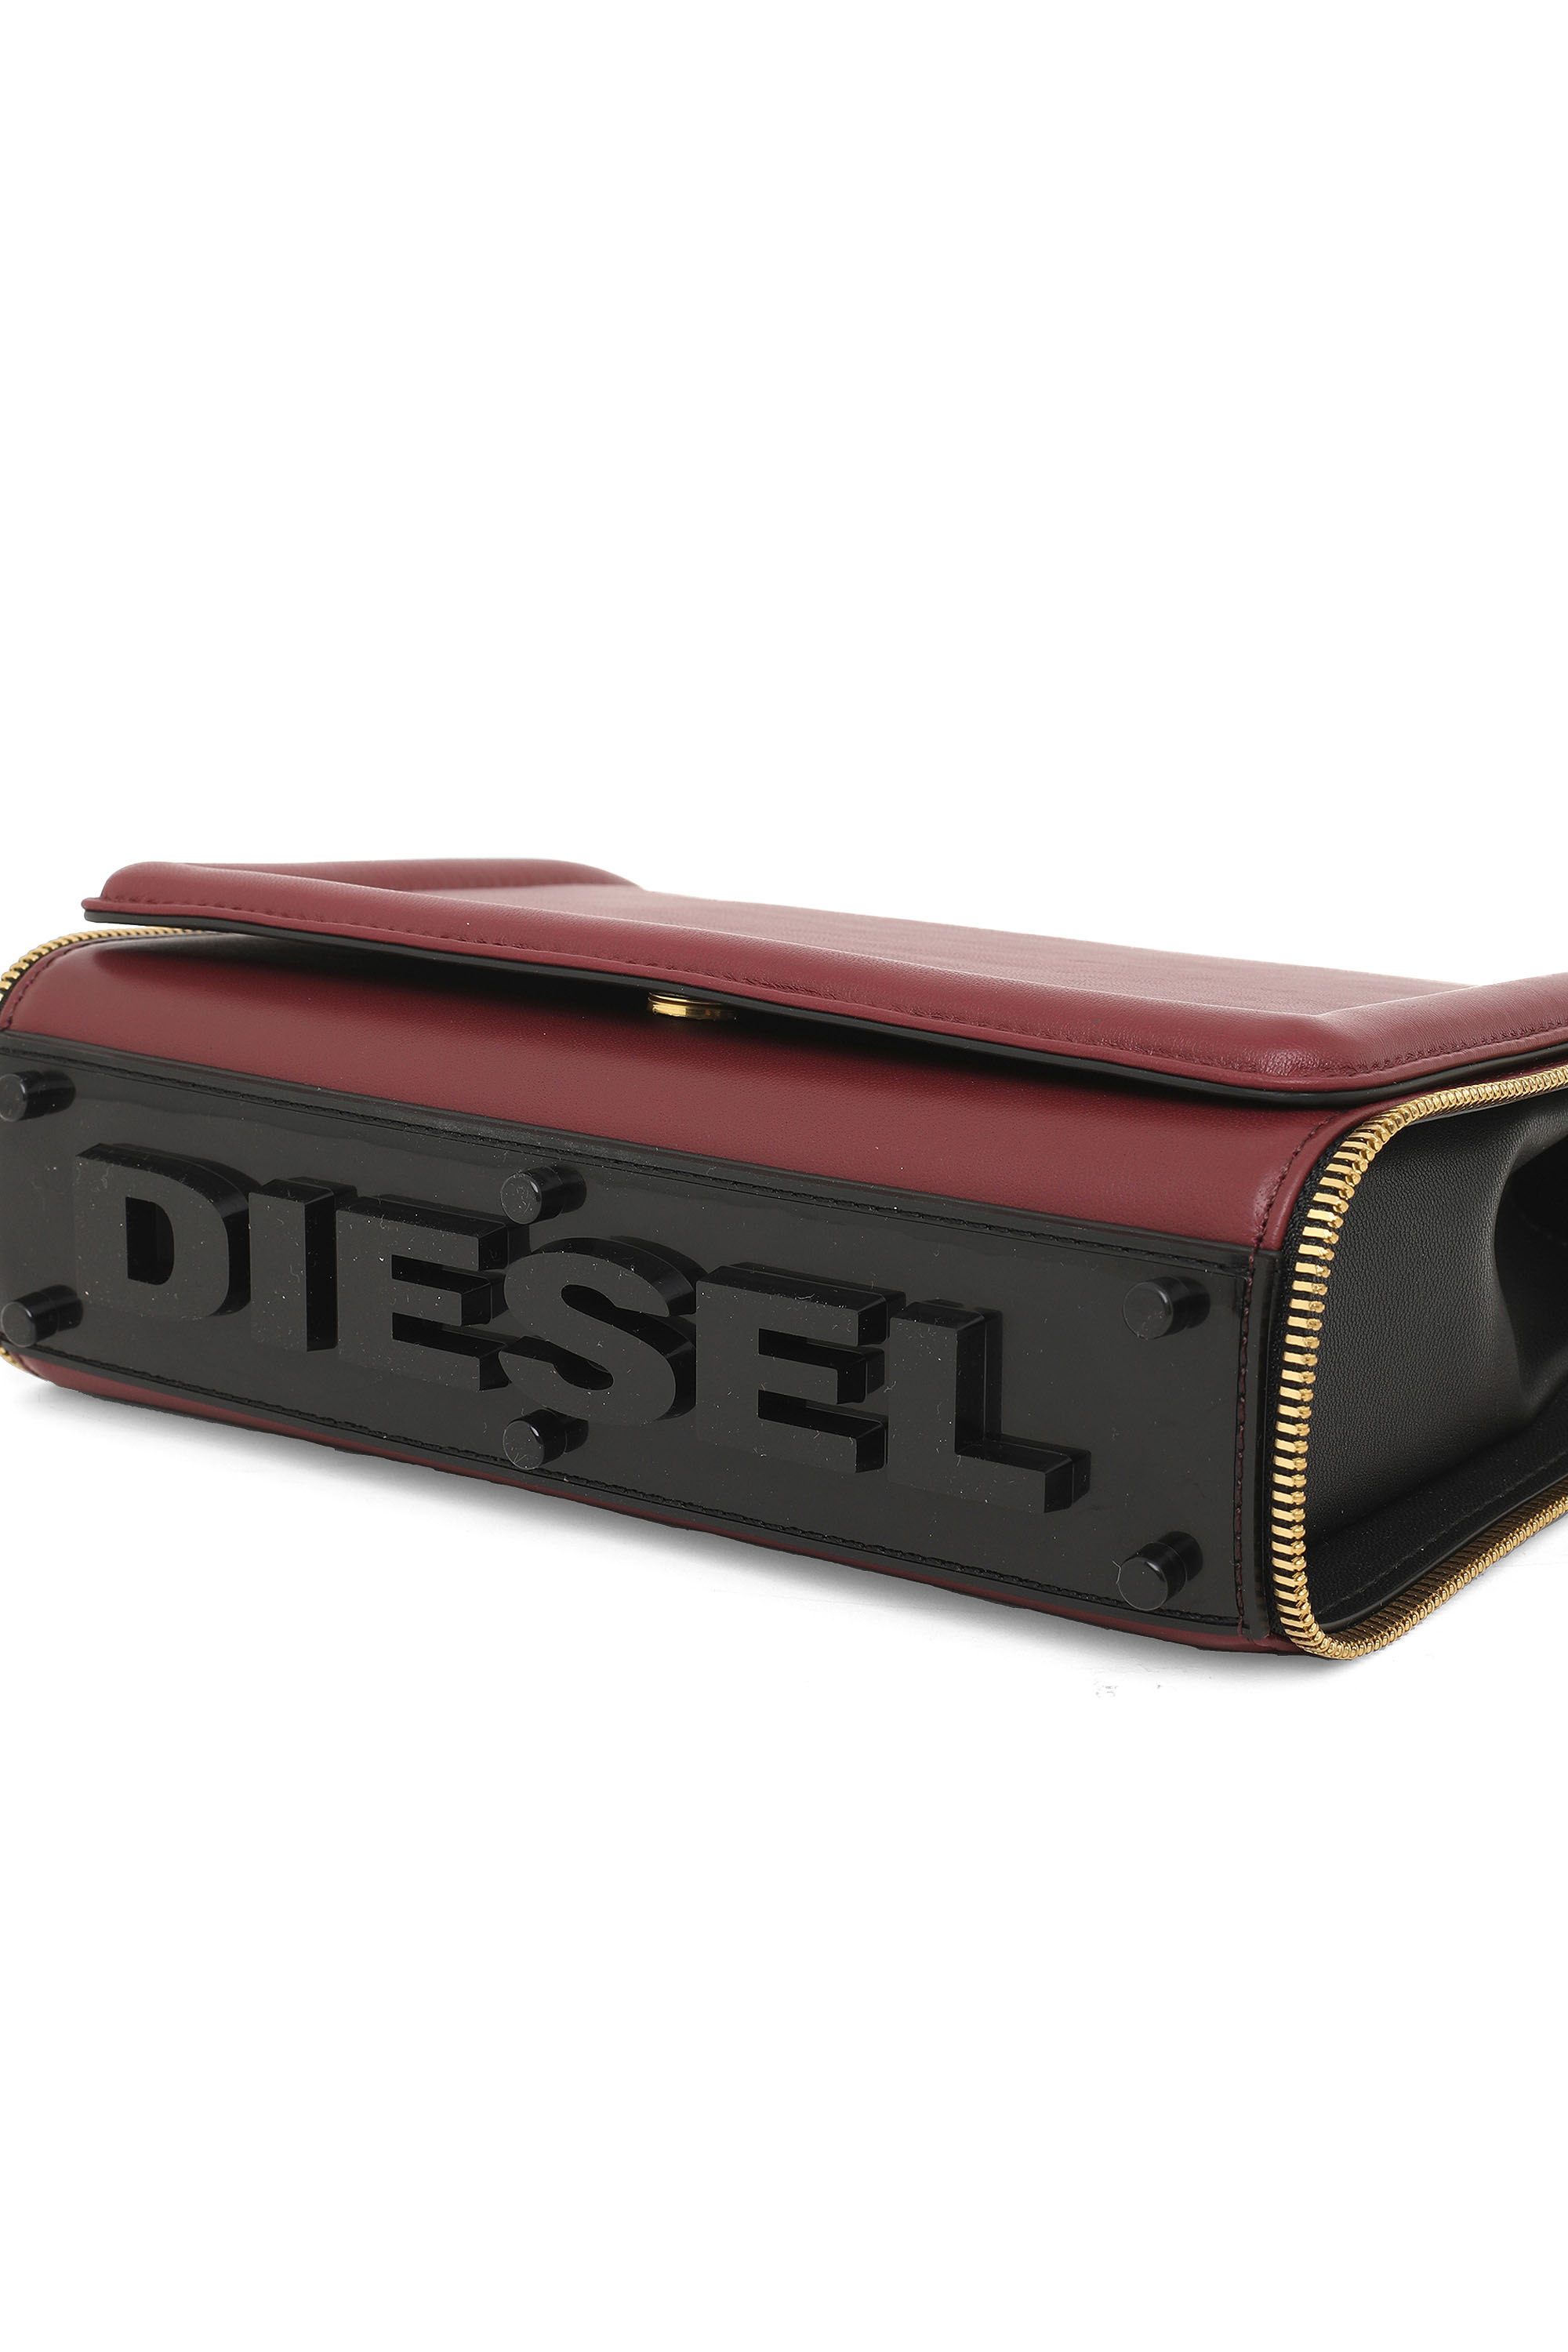 Diesel - YBYS M, Burdeos - Image 7